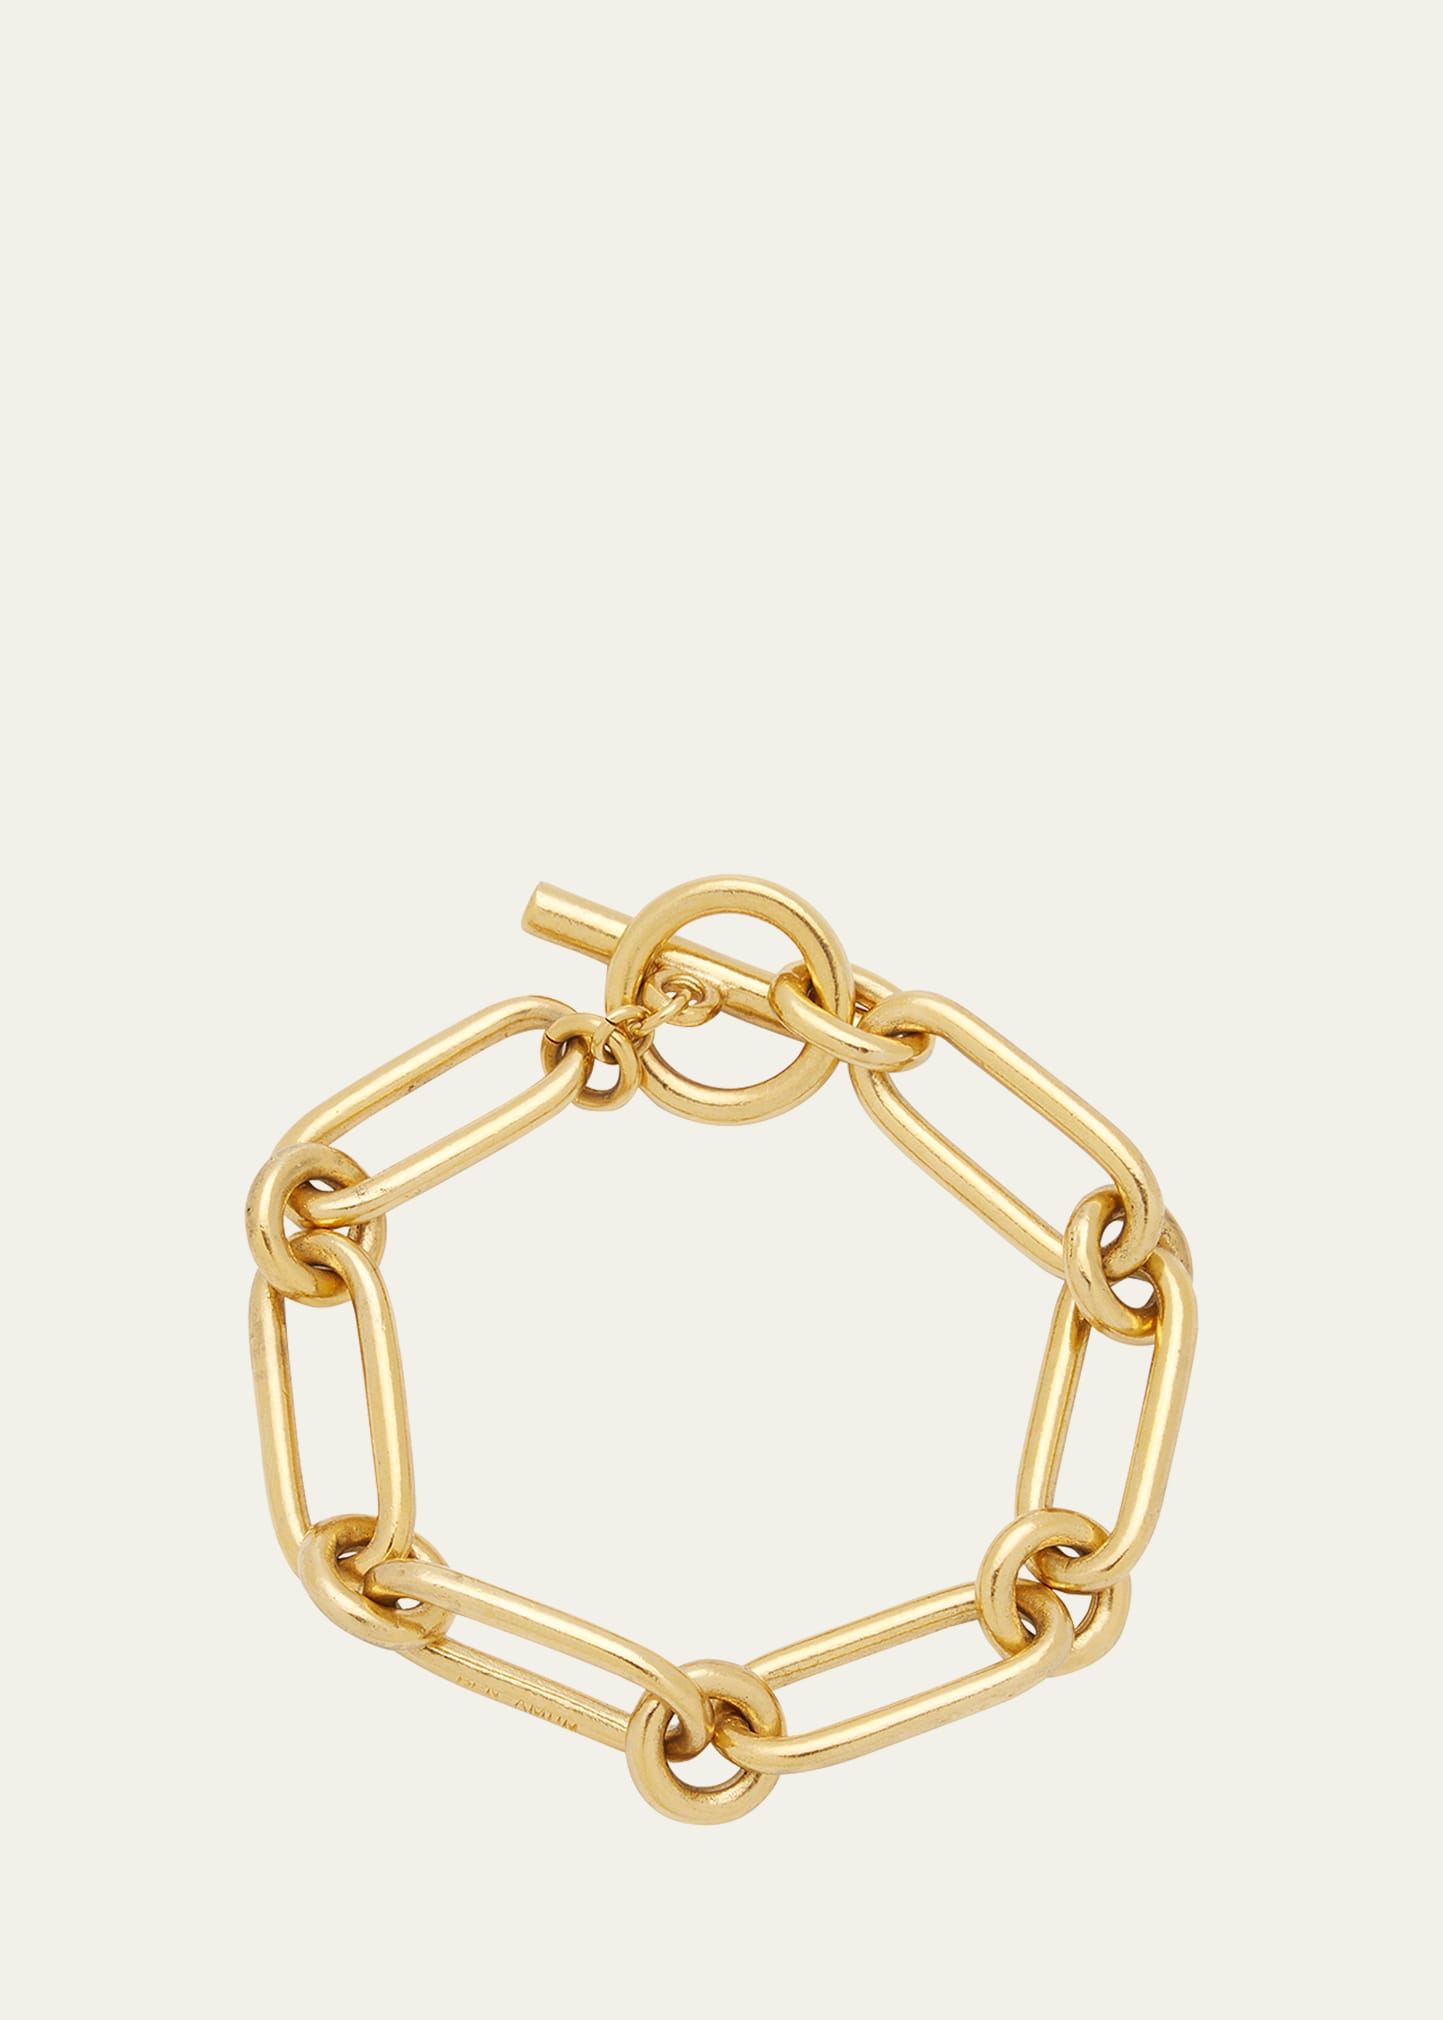 Ben-amun 24k Gold Electroplate Chain Link Bracelet In Yg